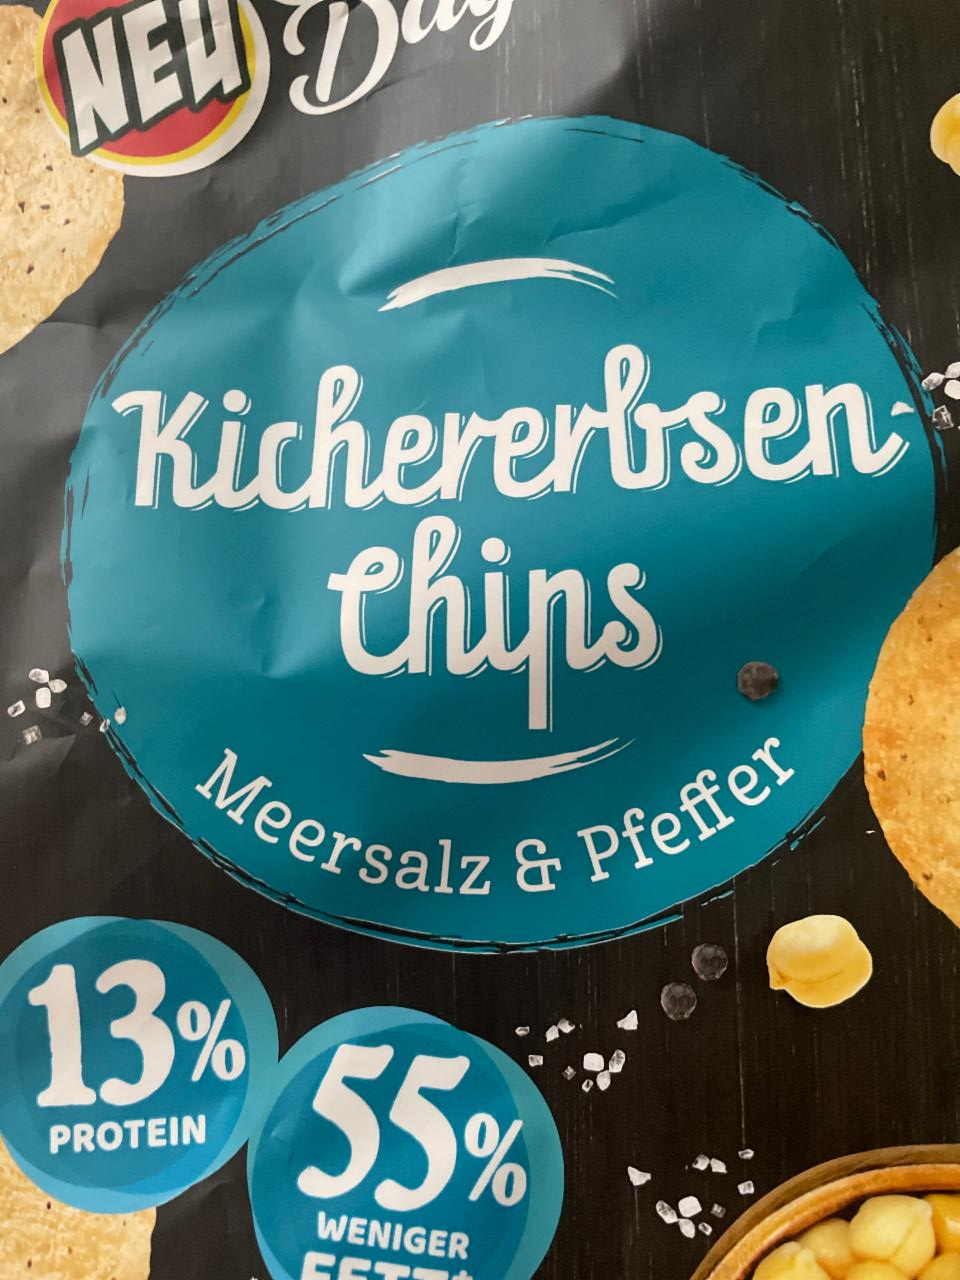 Fotografie - kichererbsen-chips meersalz & pfeffer snack day lidl